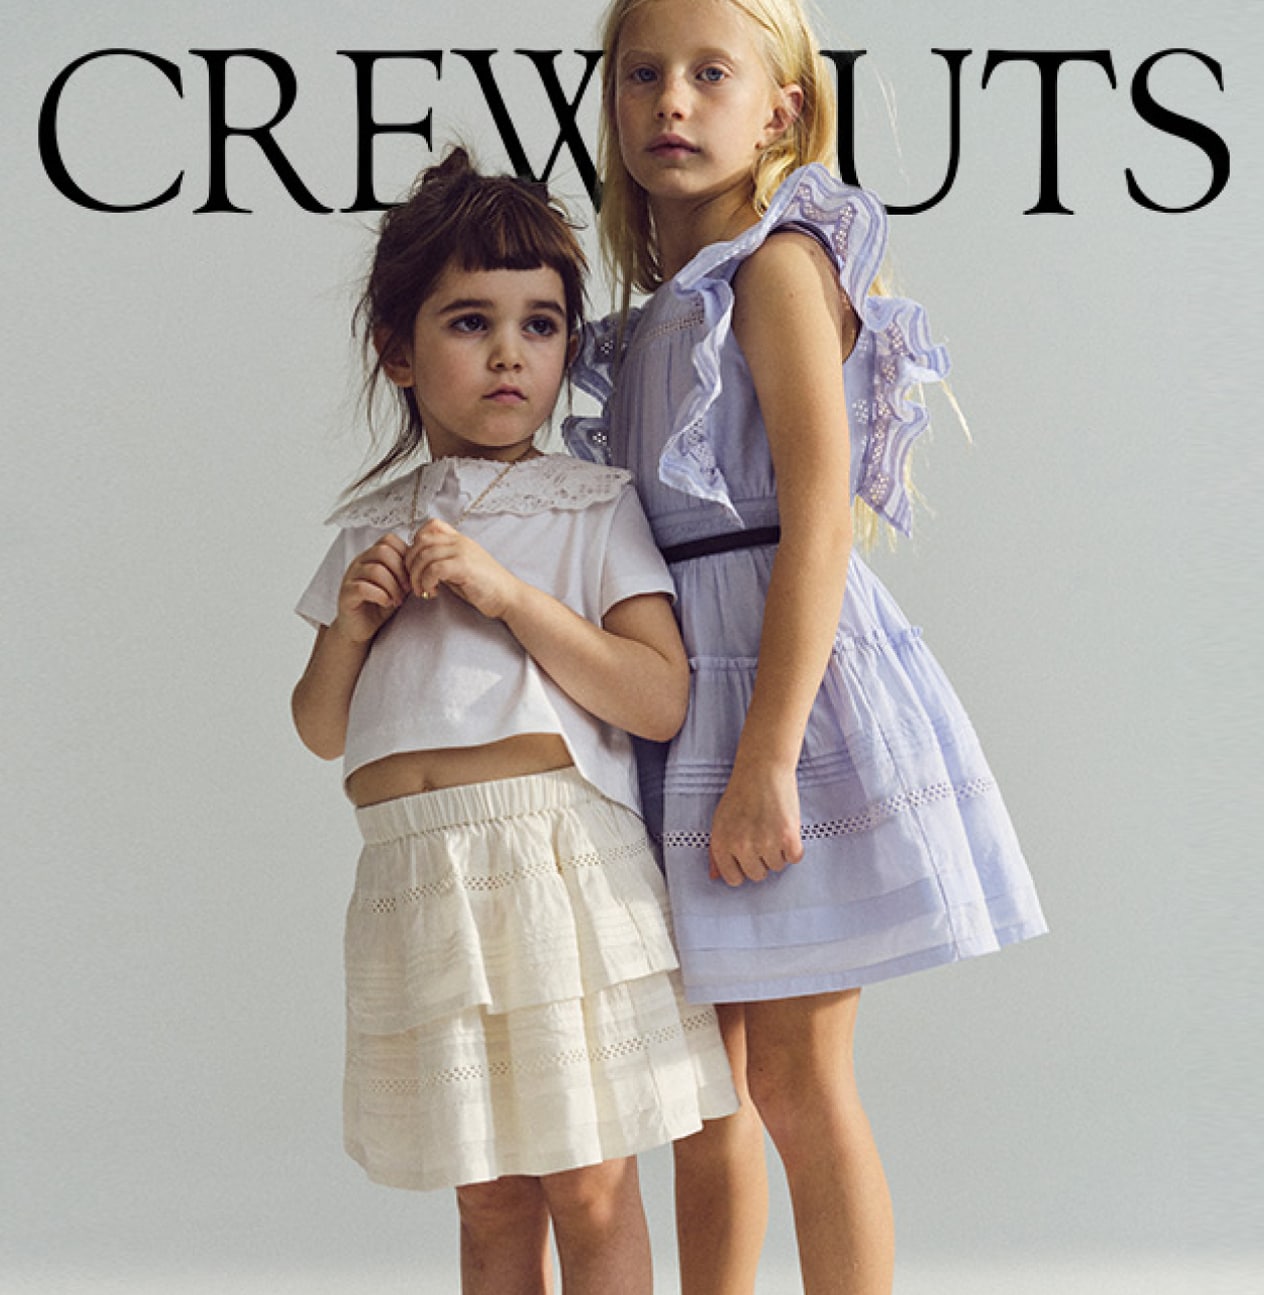 J.Crew: Clothes, Shoes & Accessories For Women, Men & Kids